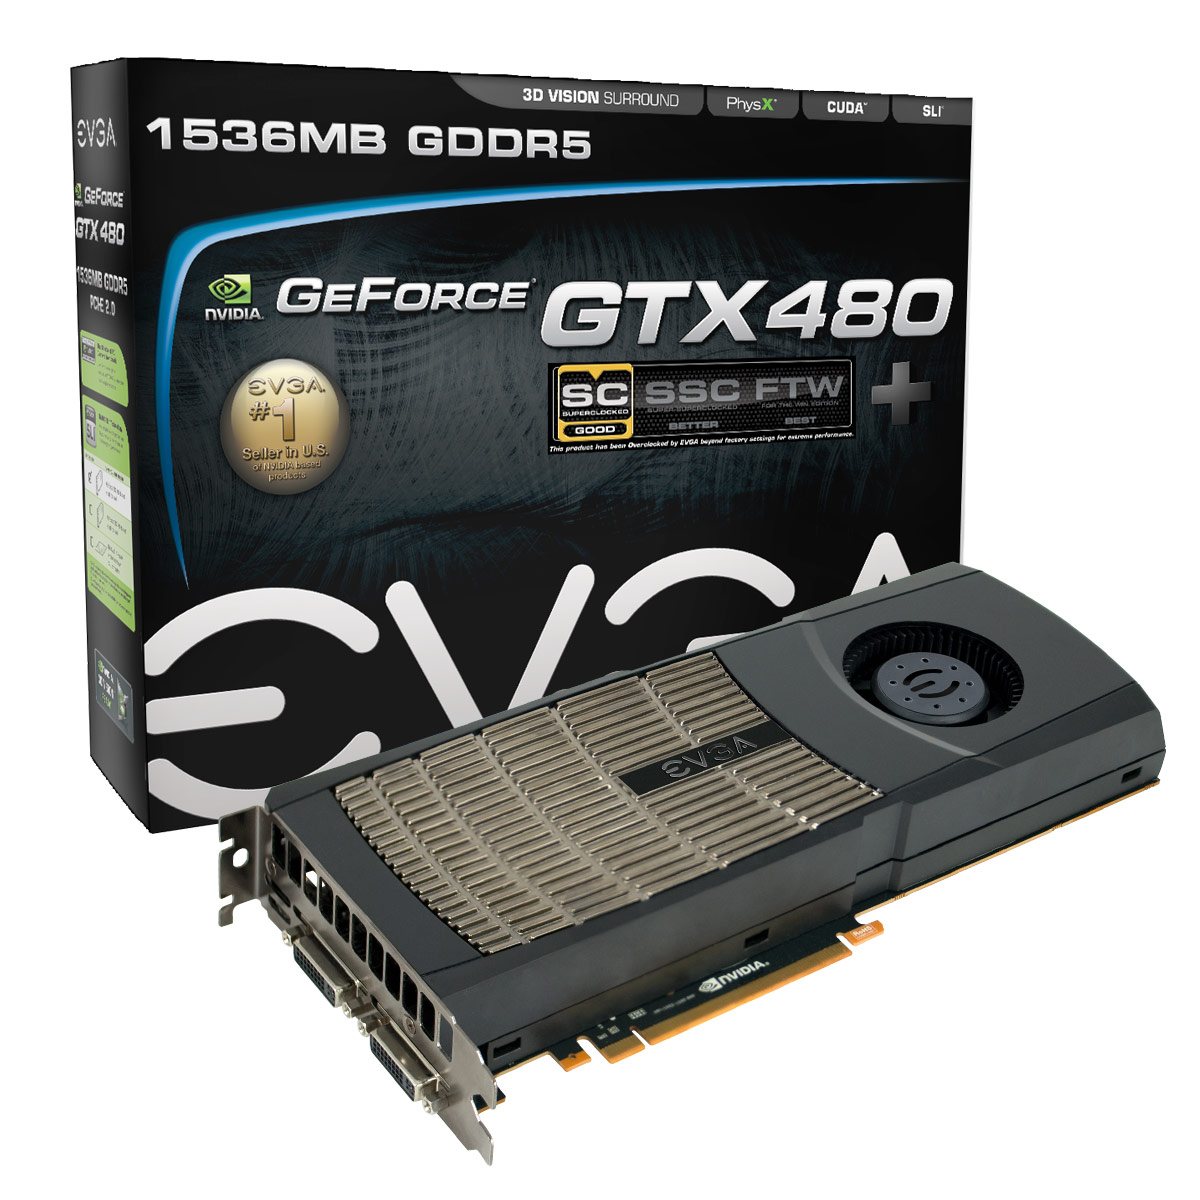 Immagine pubblicata in relazione al seguente contenuto: EVGA lancia la video card GeForce GTX 480 SuperClocked+ | Nome immagine: news13342_1.jpg